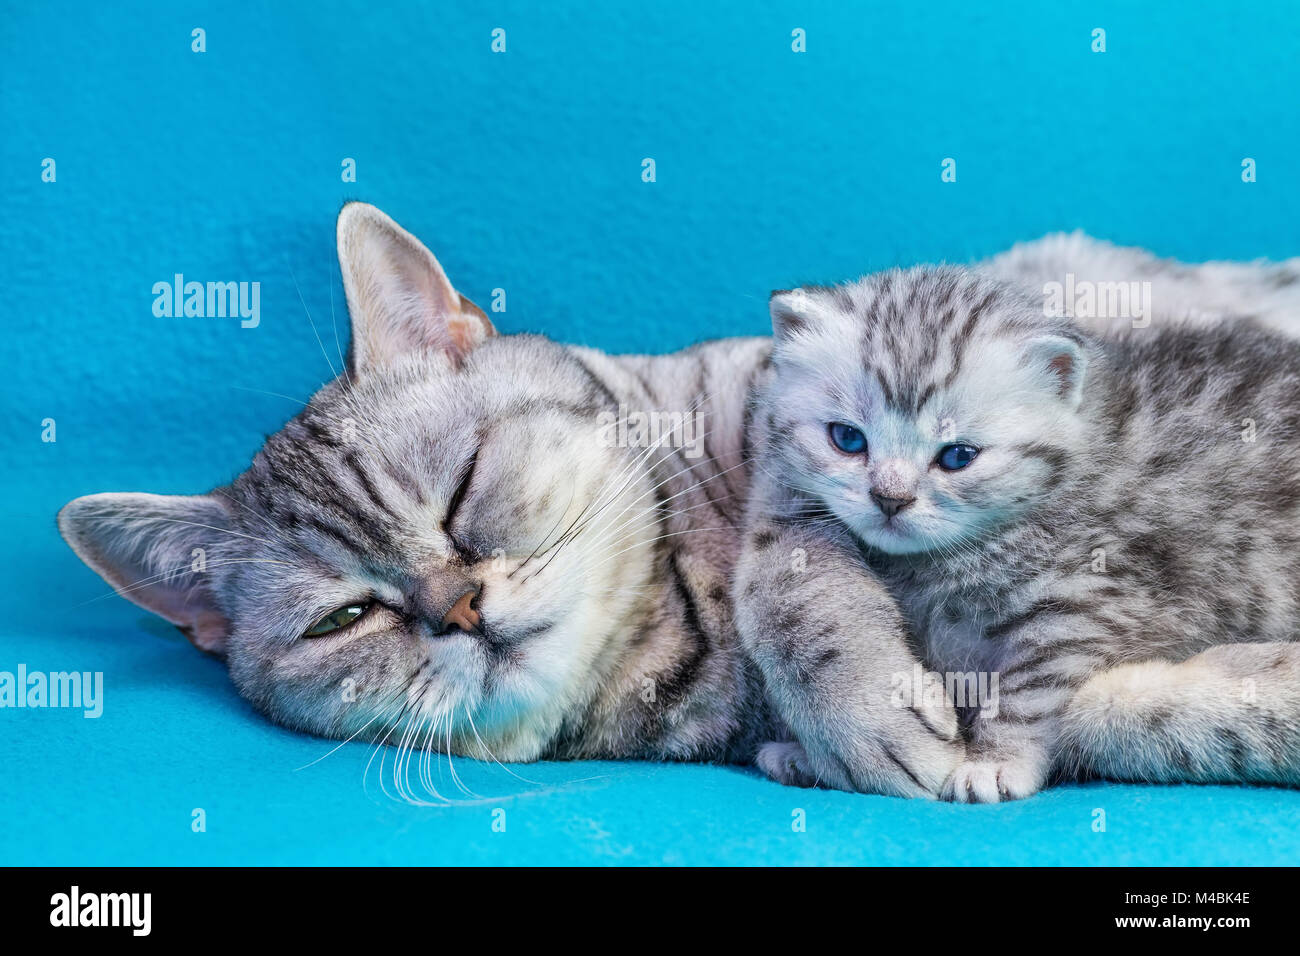 Mamá Gata gatito tumbado con prendas de color azul Foto de stock